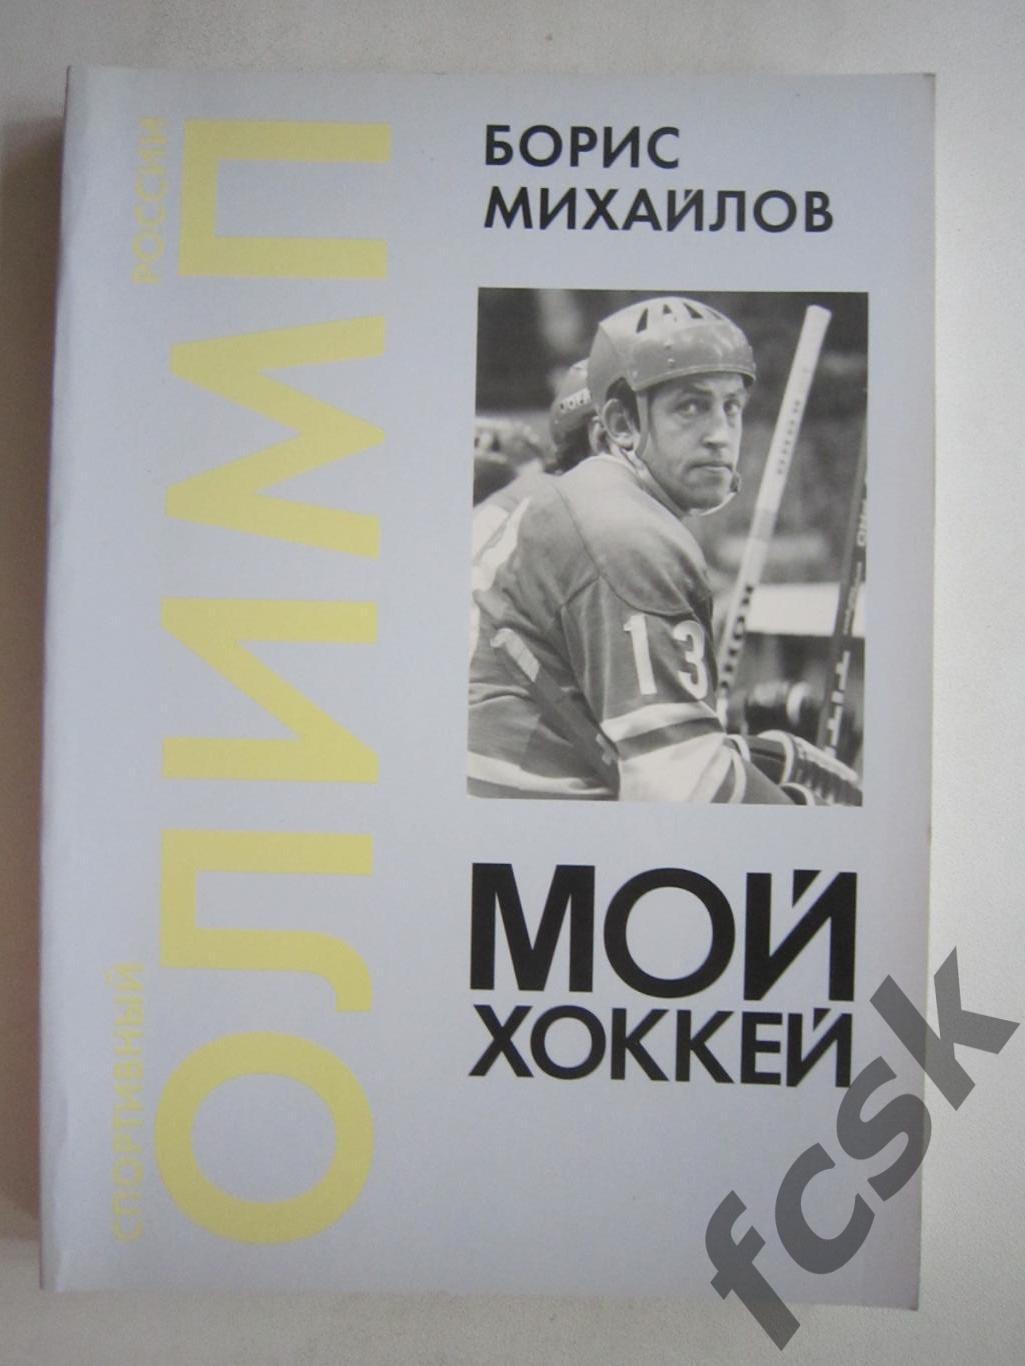 Борис Михайлов. Мой хоккей (ф3)